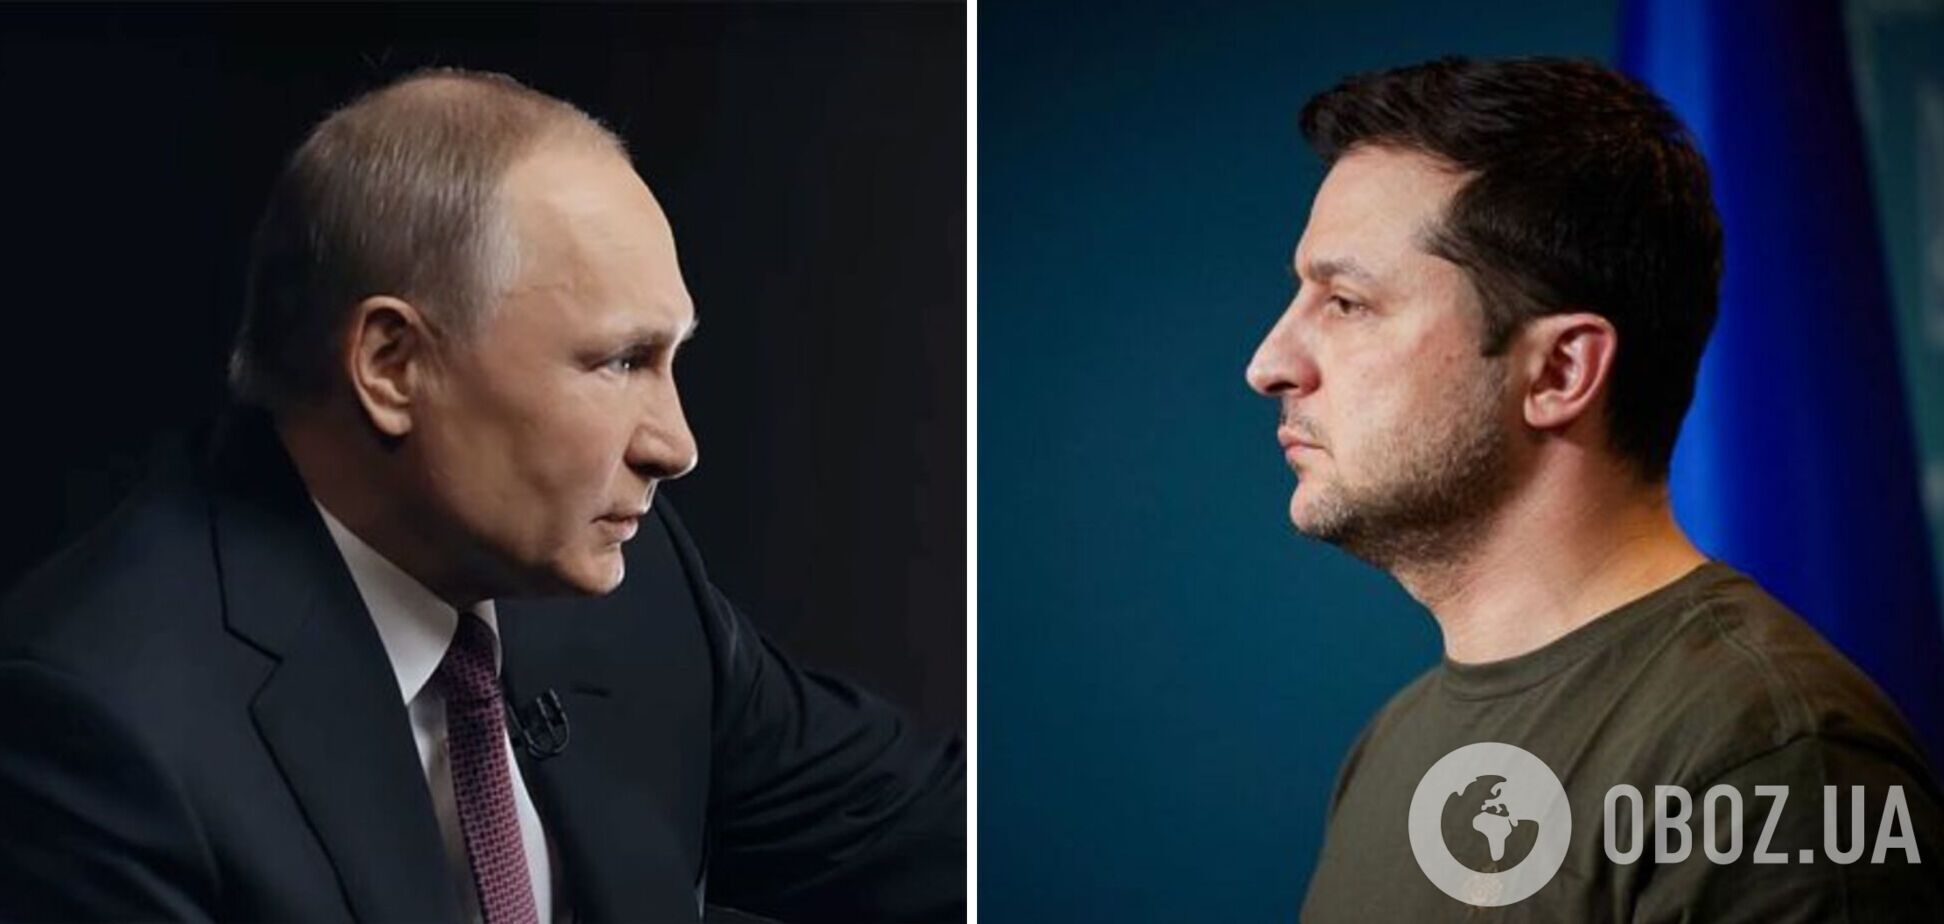 Документы для встречи Зеленского с Путиным готовы: Подоляк раскрыл нюансы. Видео